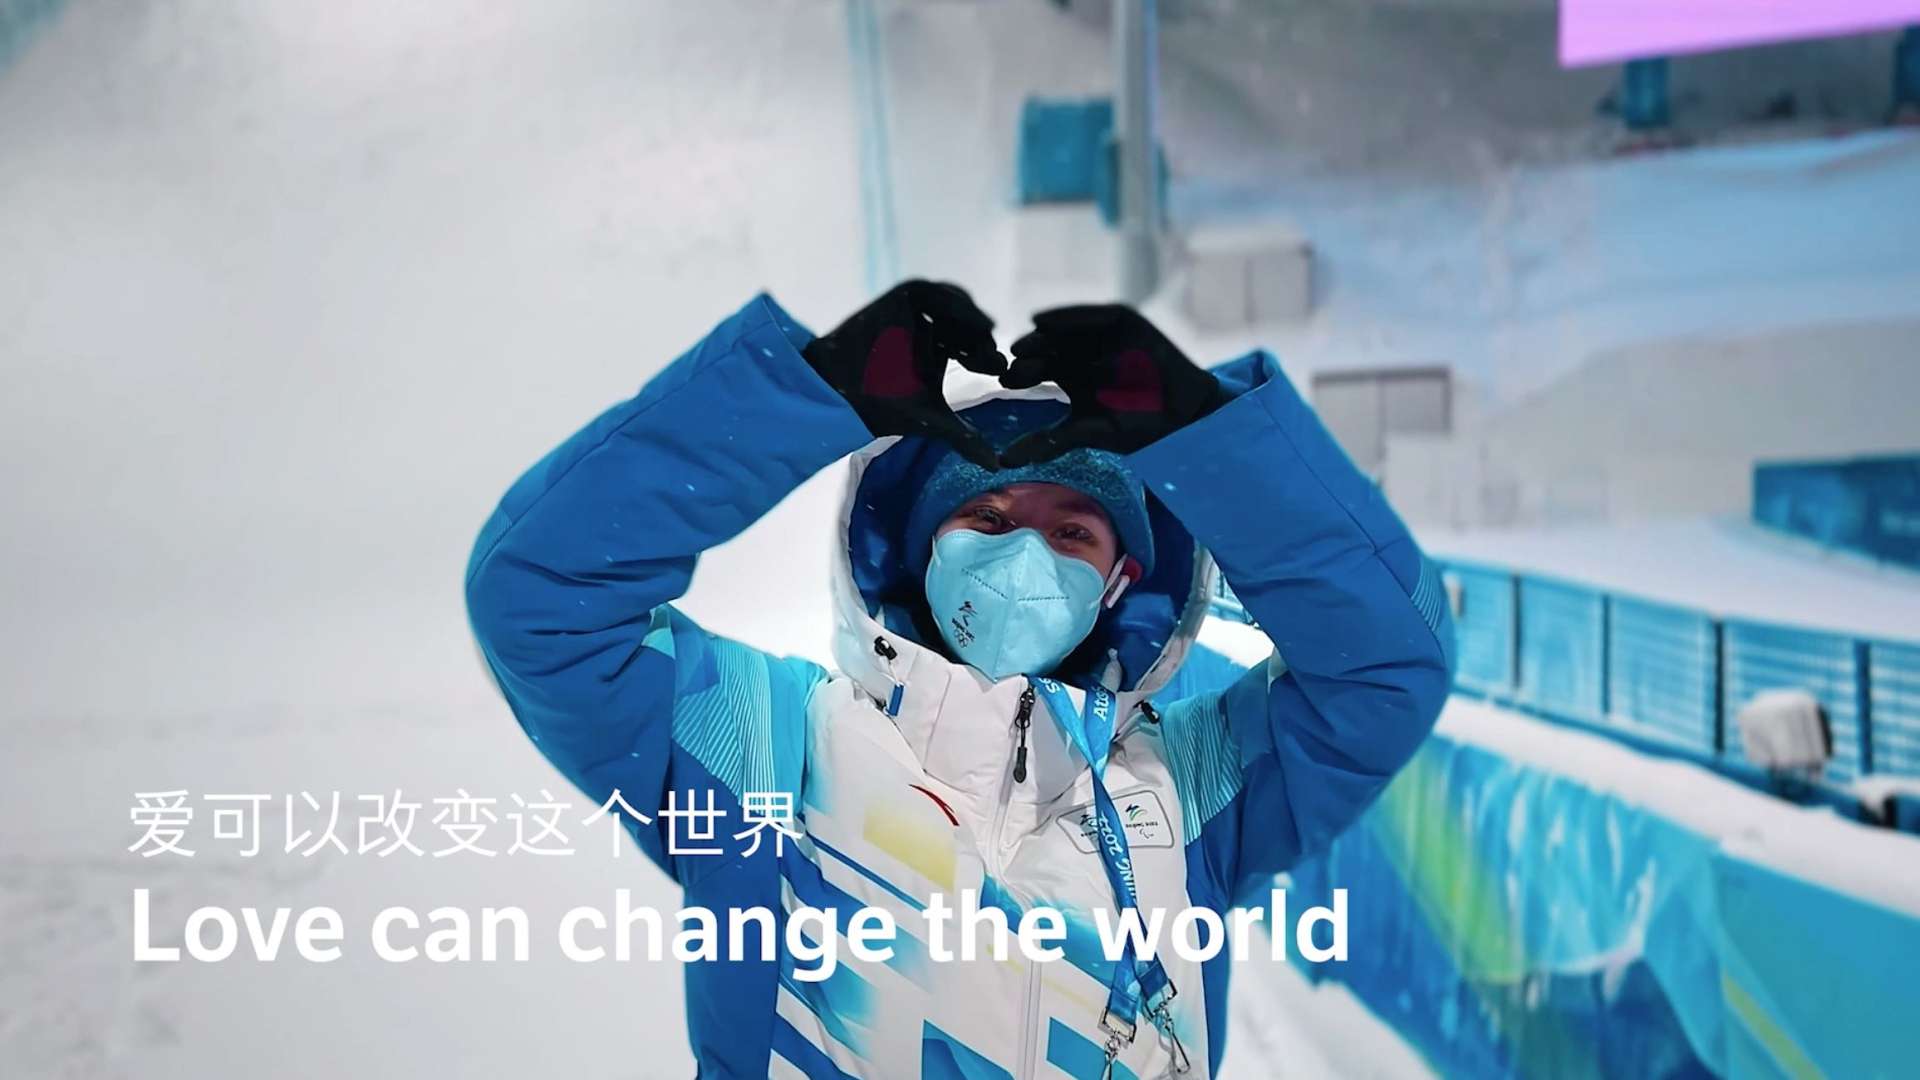 北京2022年冬奥会闭幕式 志愿者短片《温暖的雪花》-完整加长导演版